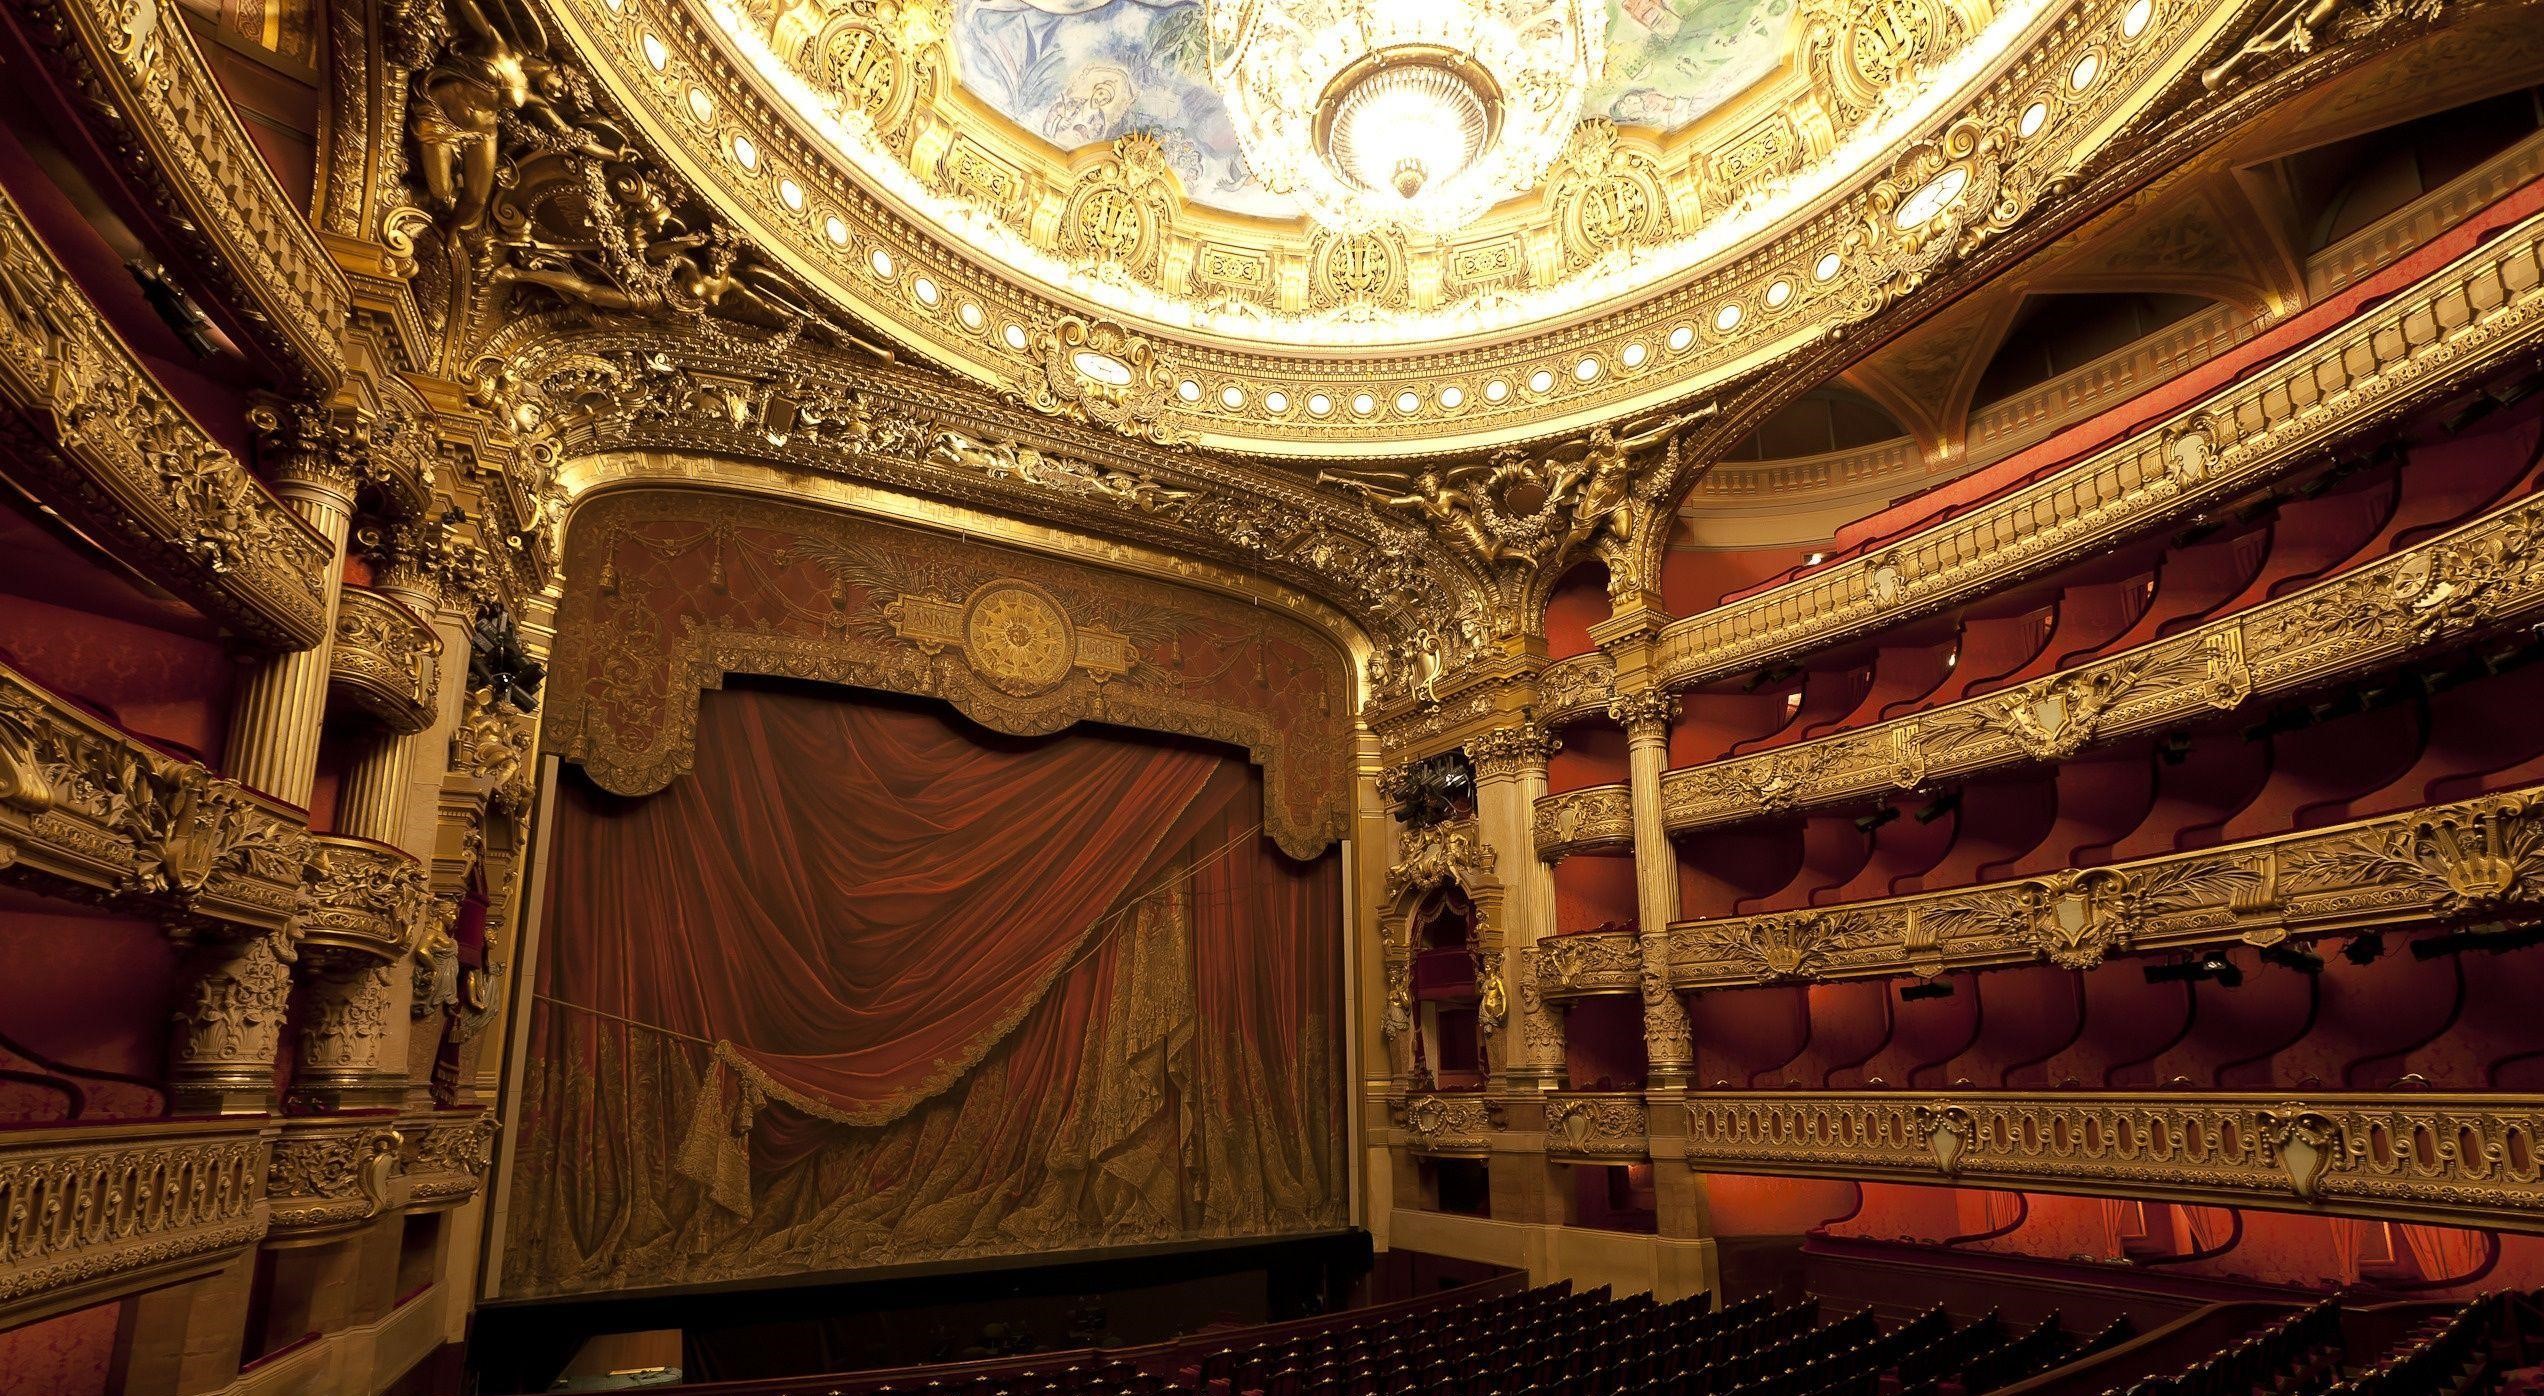 عکس زیبا سالن تئاتر طرح اشرافی برای اجرای اپرا و دیگر نمایش ها